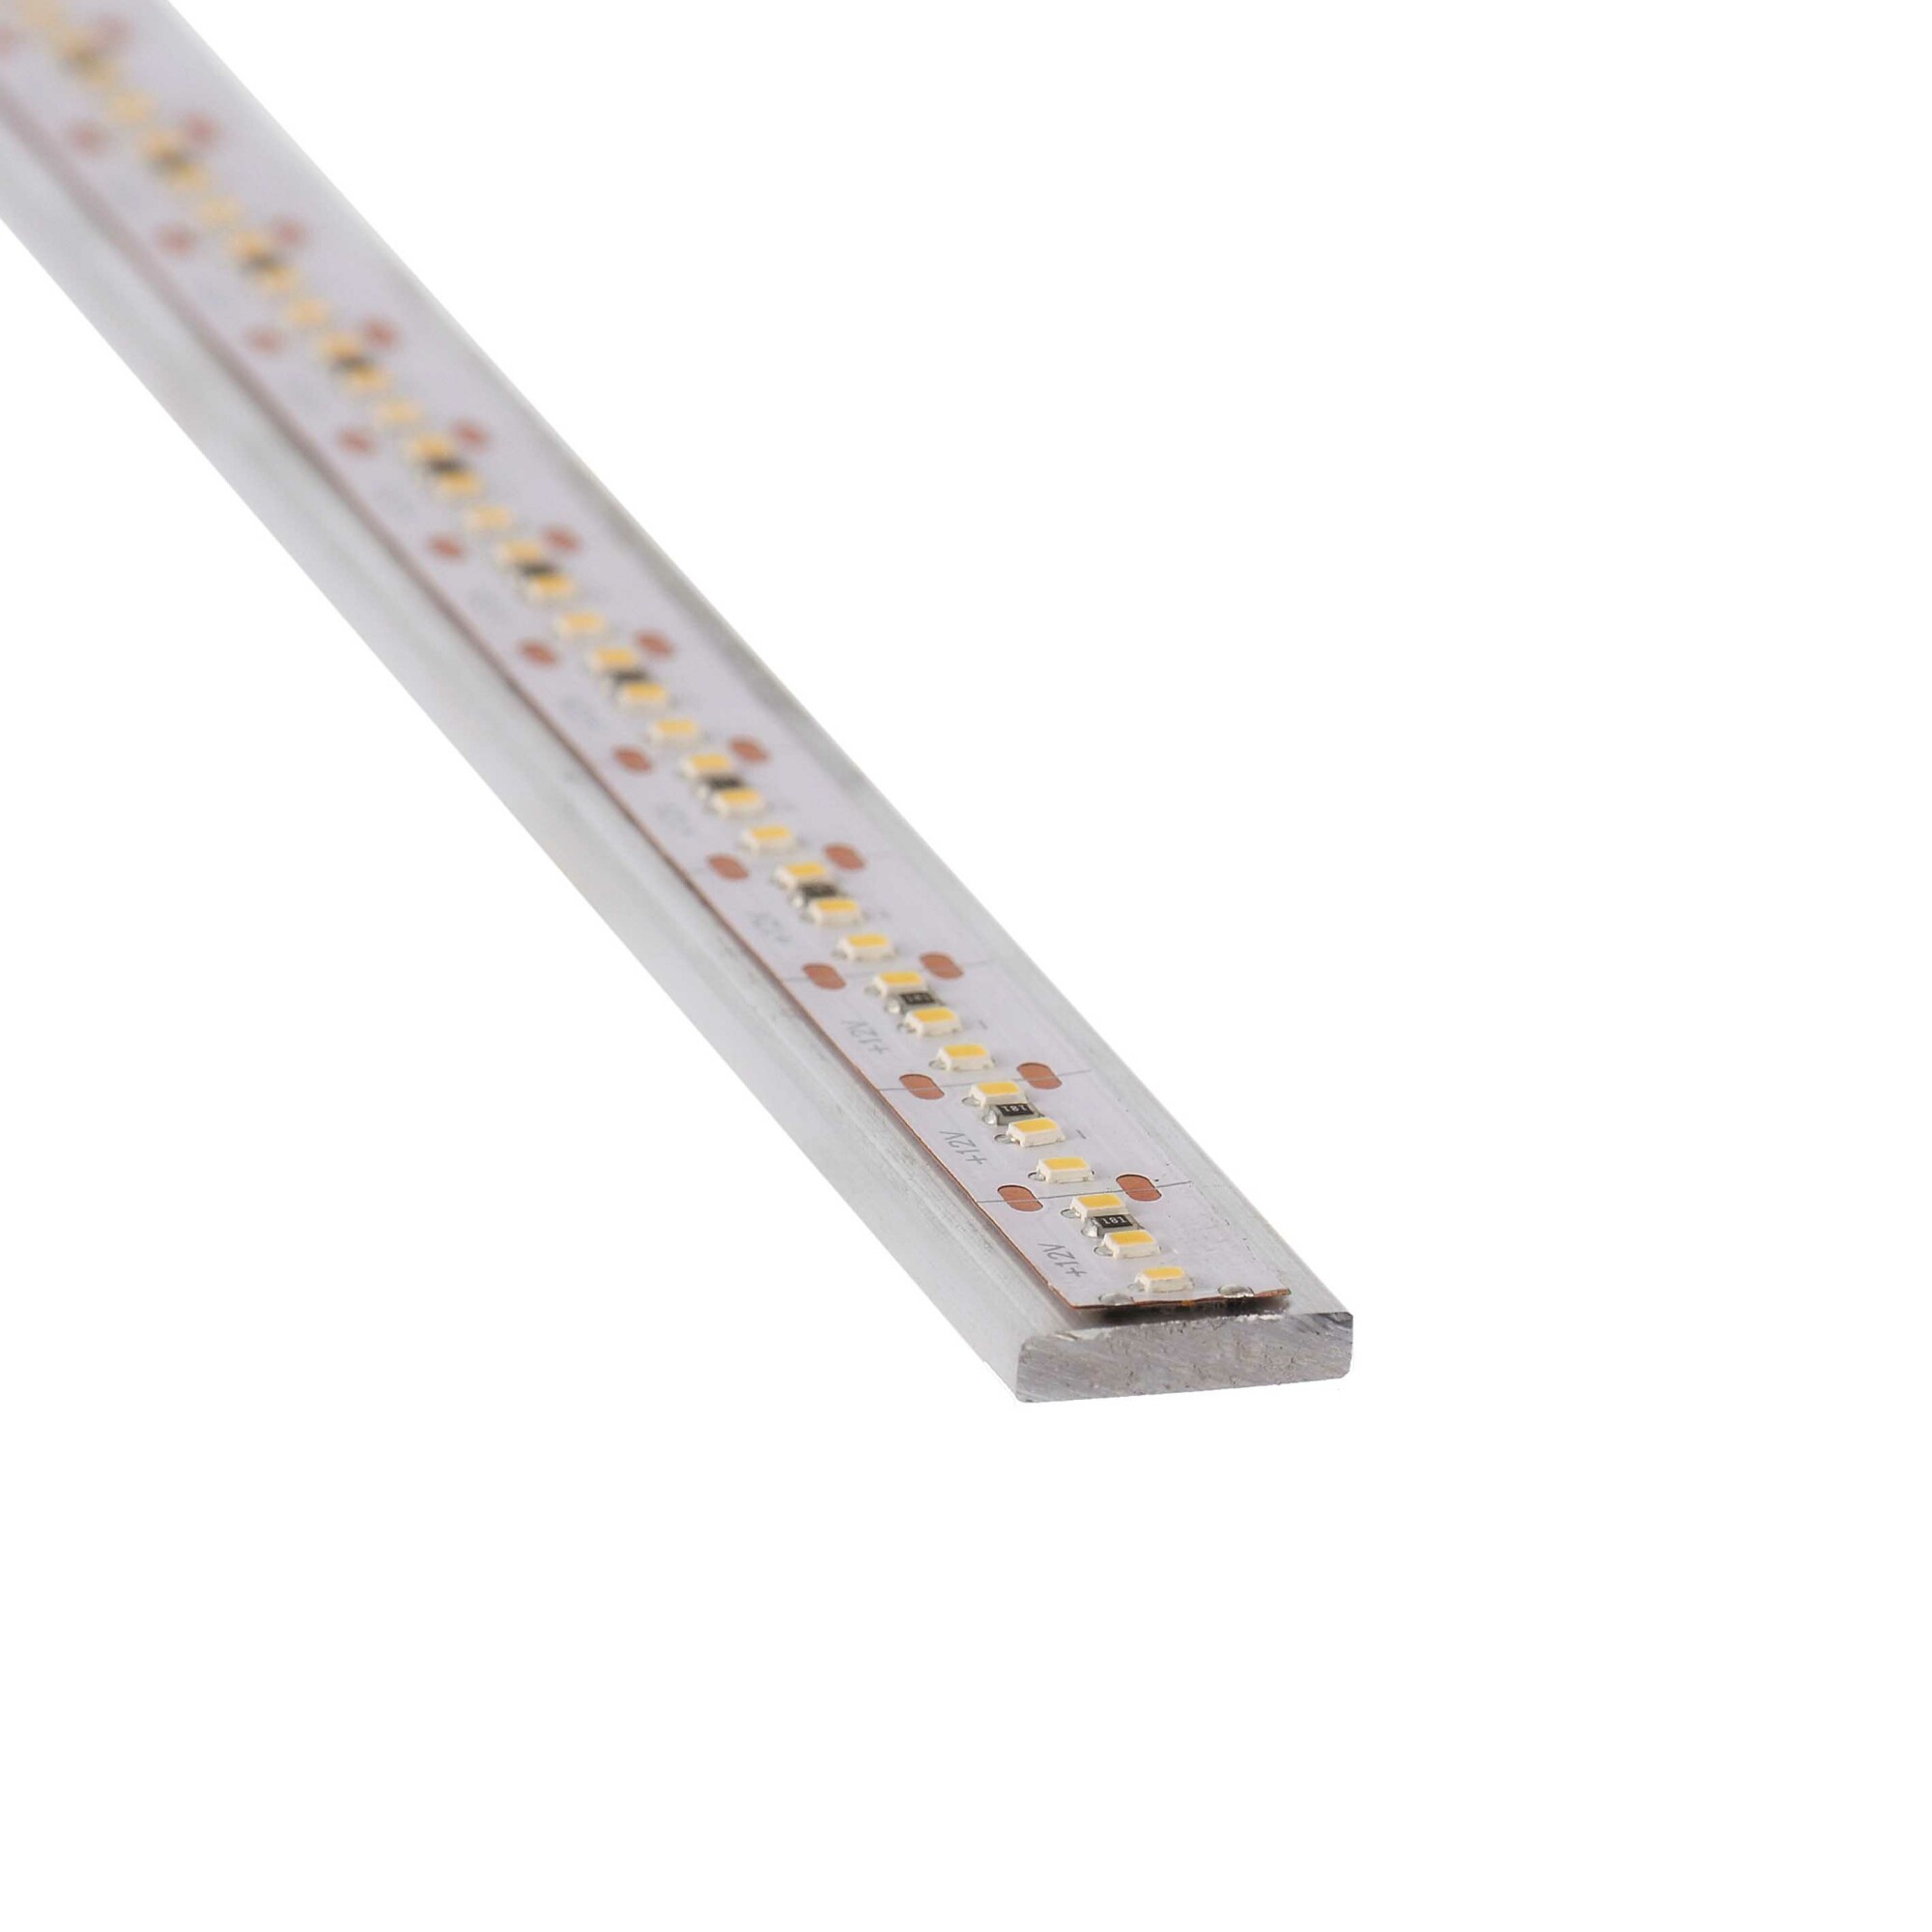 Pletina de aluminio para tiras LED (10cm) - FMAS Automatización